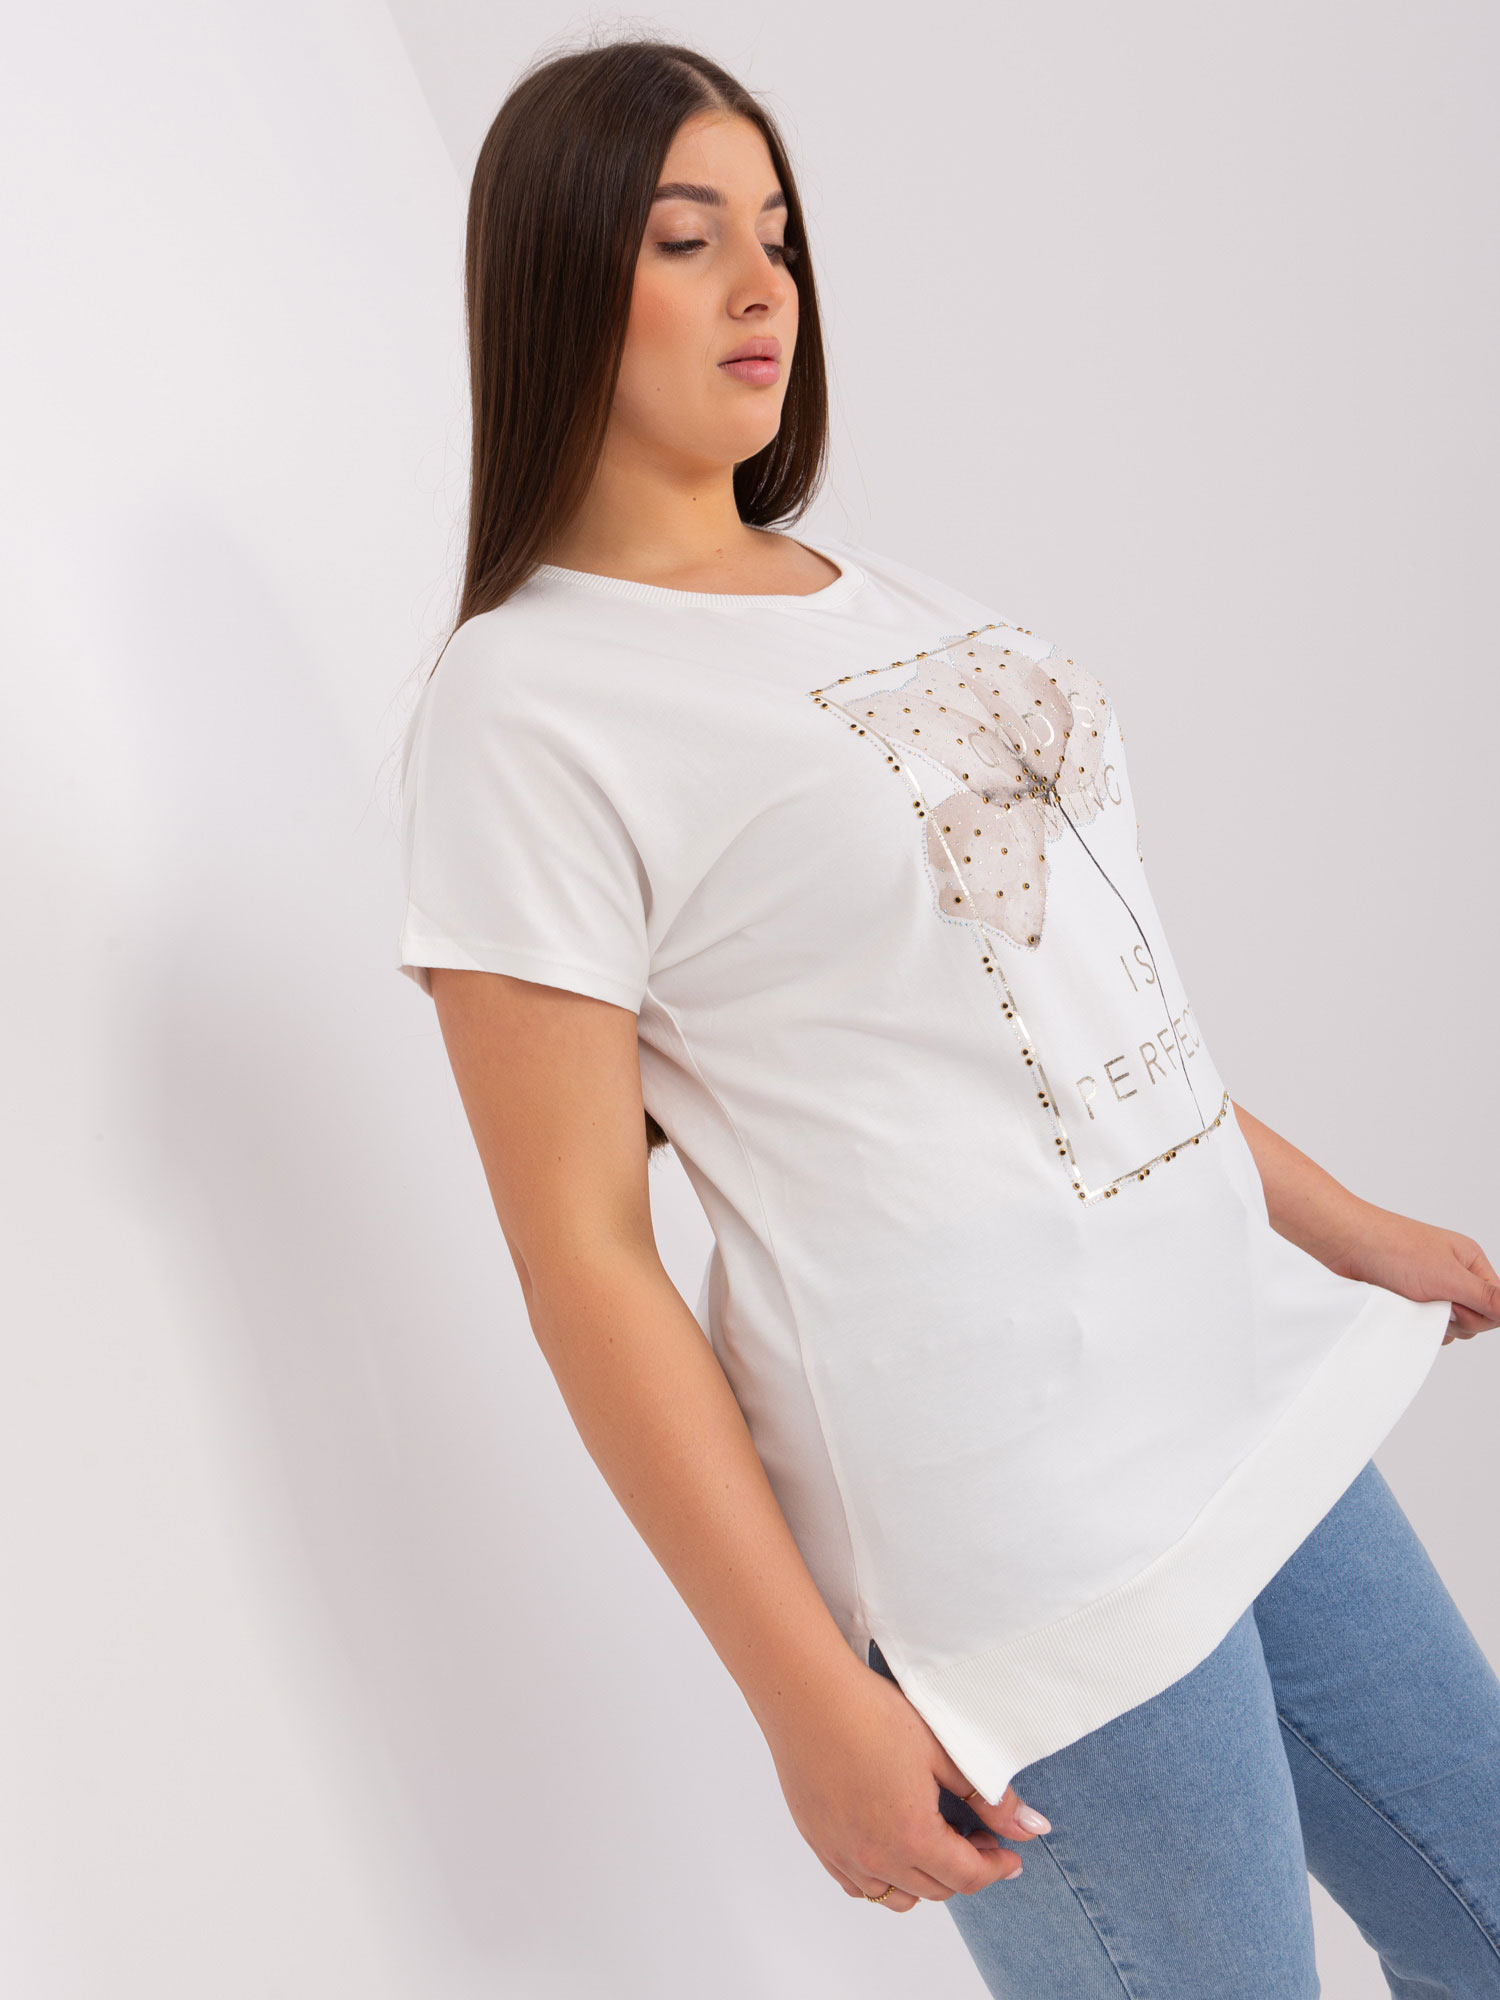 Women's cotton blouse size Ecru